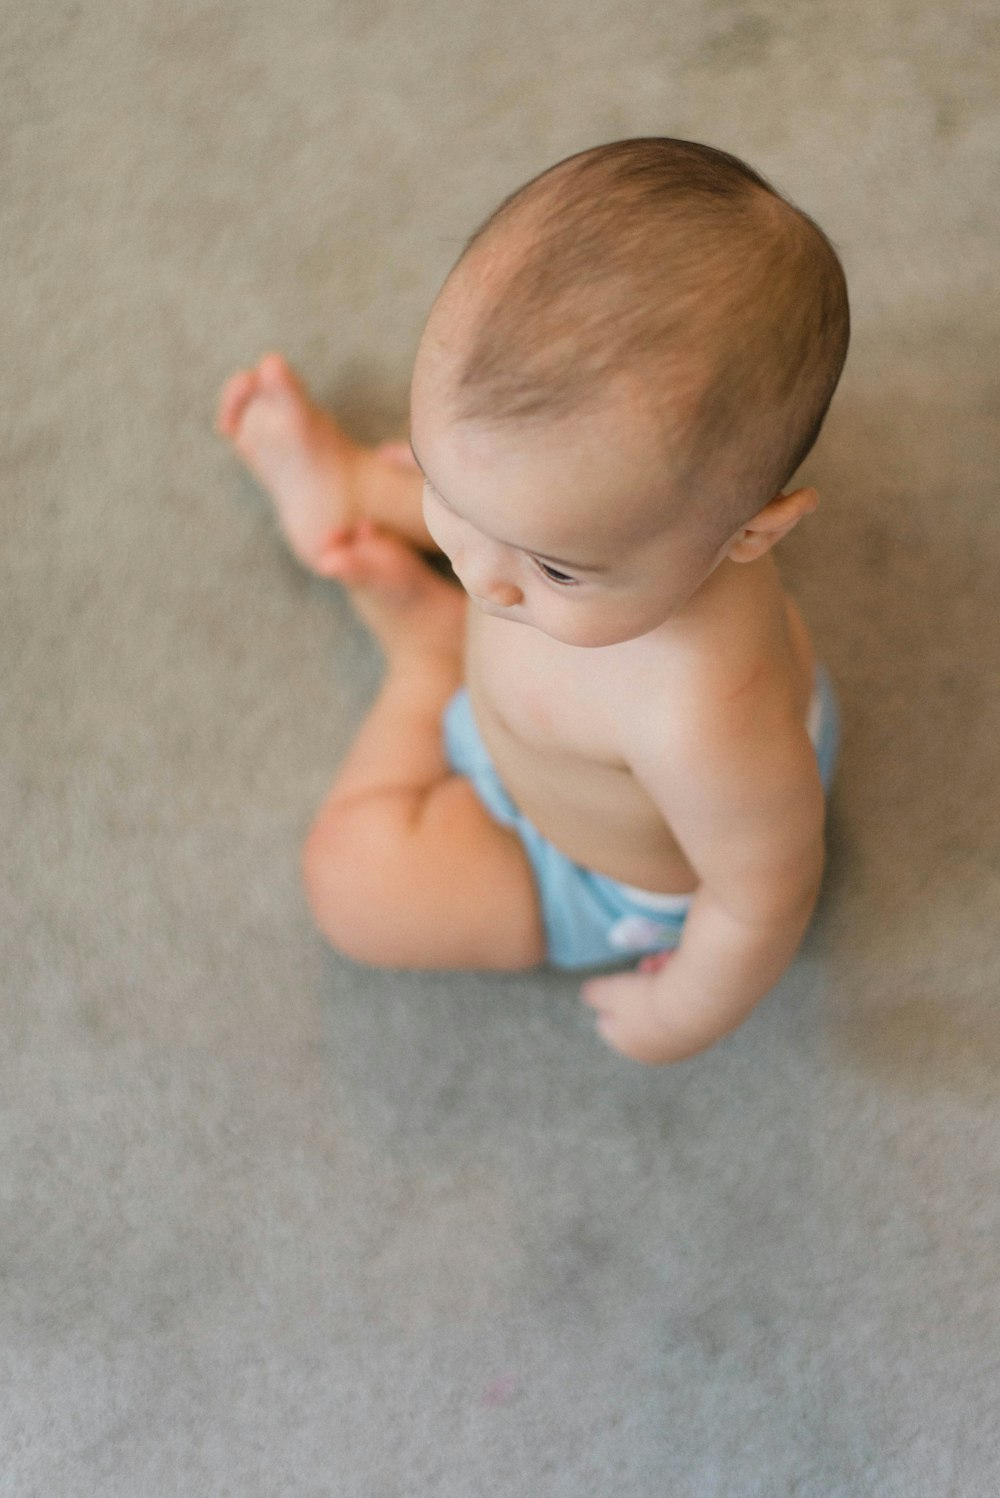 マットに座っている赤ちゃんのセレクティブフォーカス写真